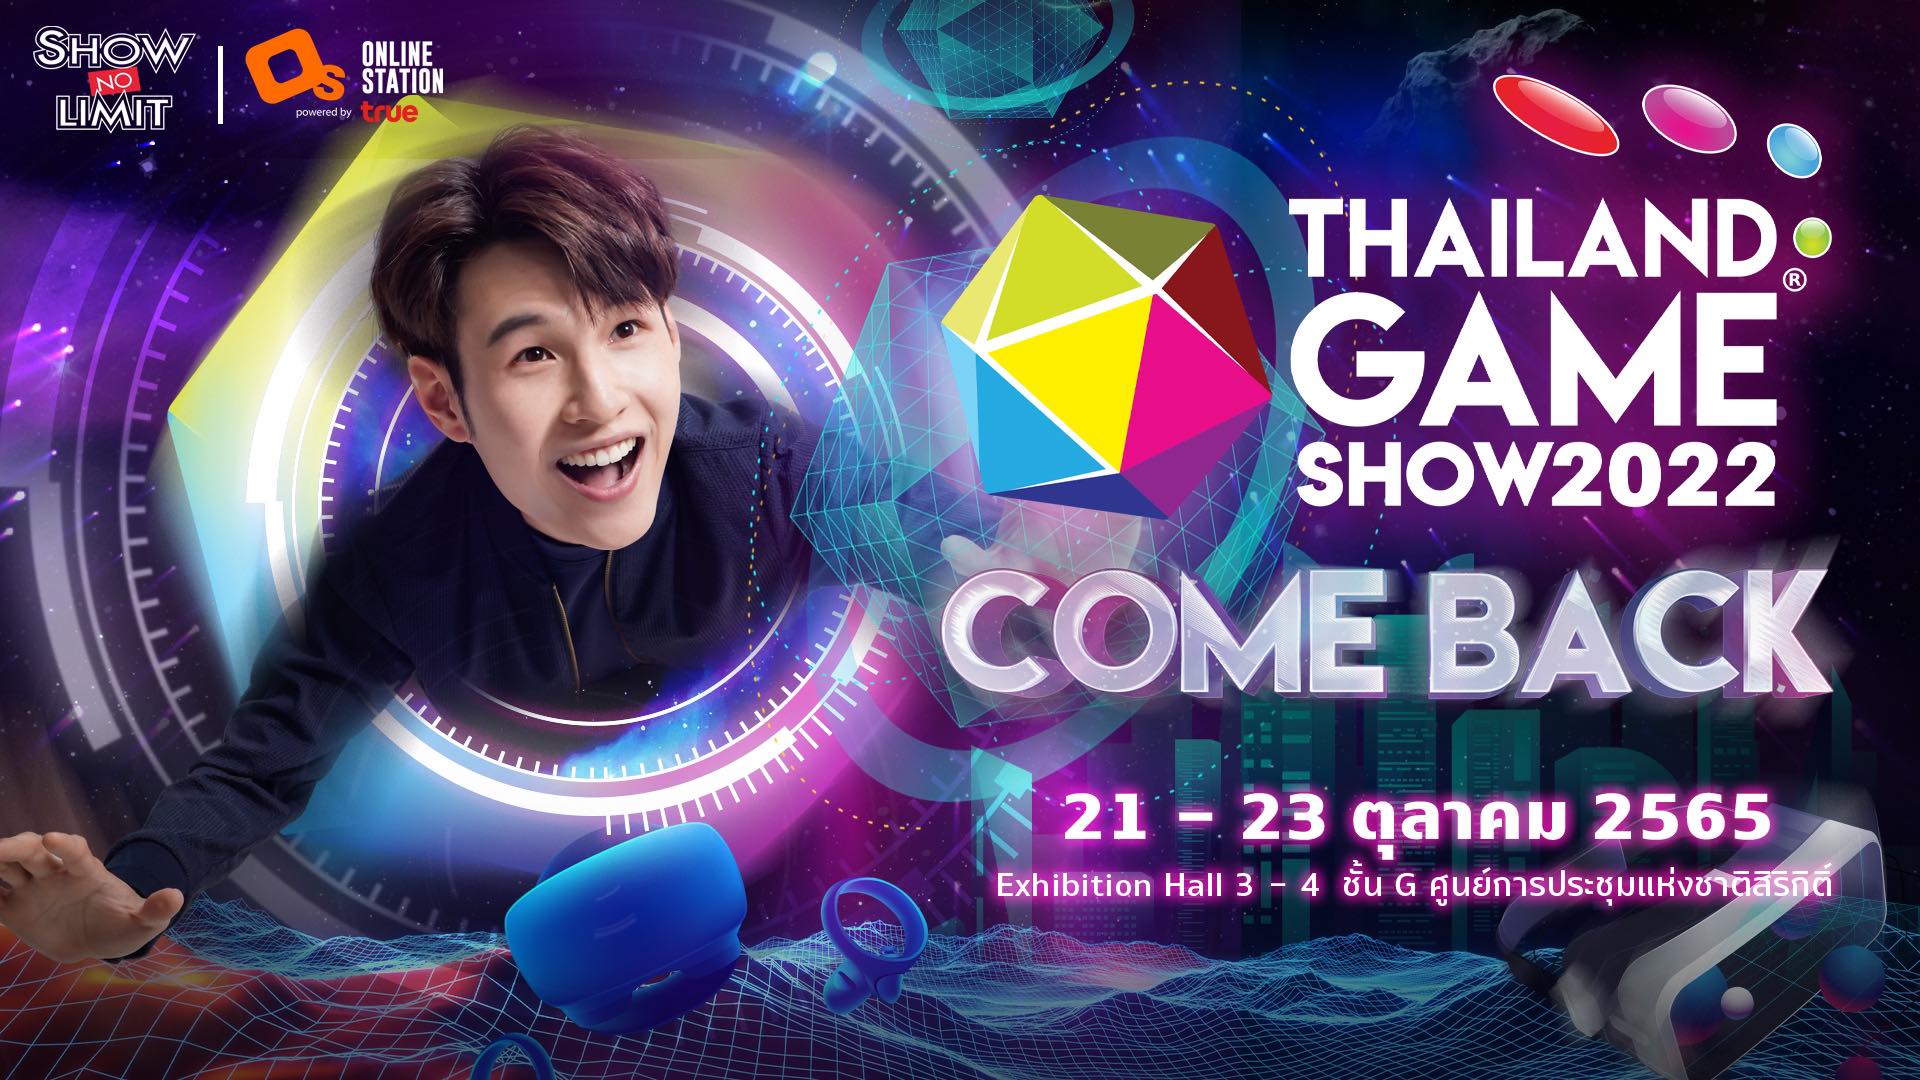 ระเบิดความมันส์  “Thailand Game Show 2022” มหกรรมเกมยิ่งใหญ่ที่สุดในเอเชียตะวันออกเฉียงใต้  ณ ศูนย์ ฯ สิริกิติ์ 21-23 ต.ค. นี้